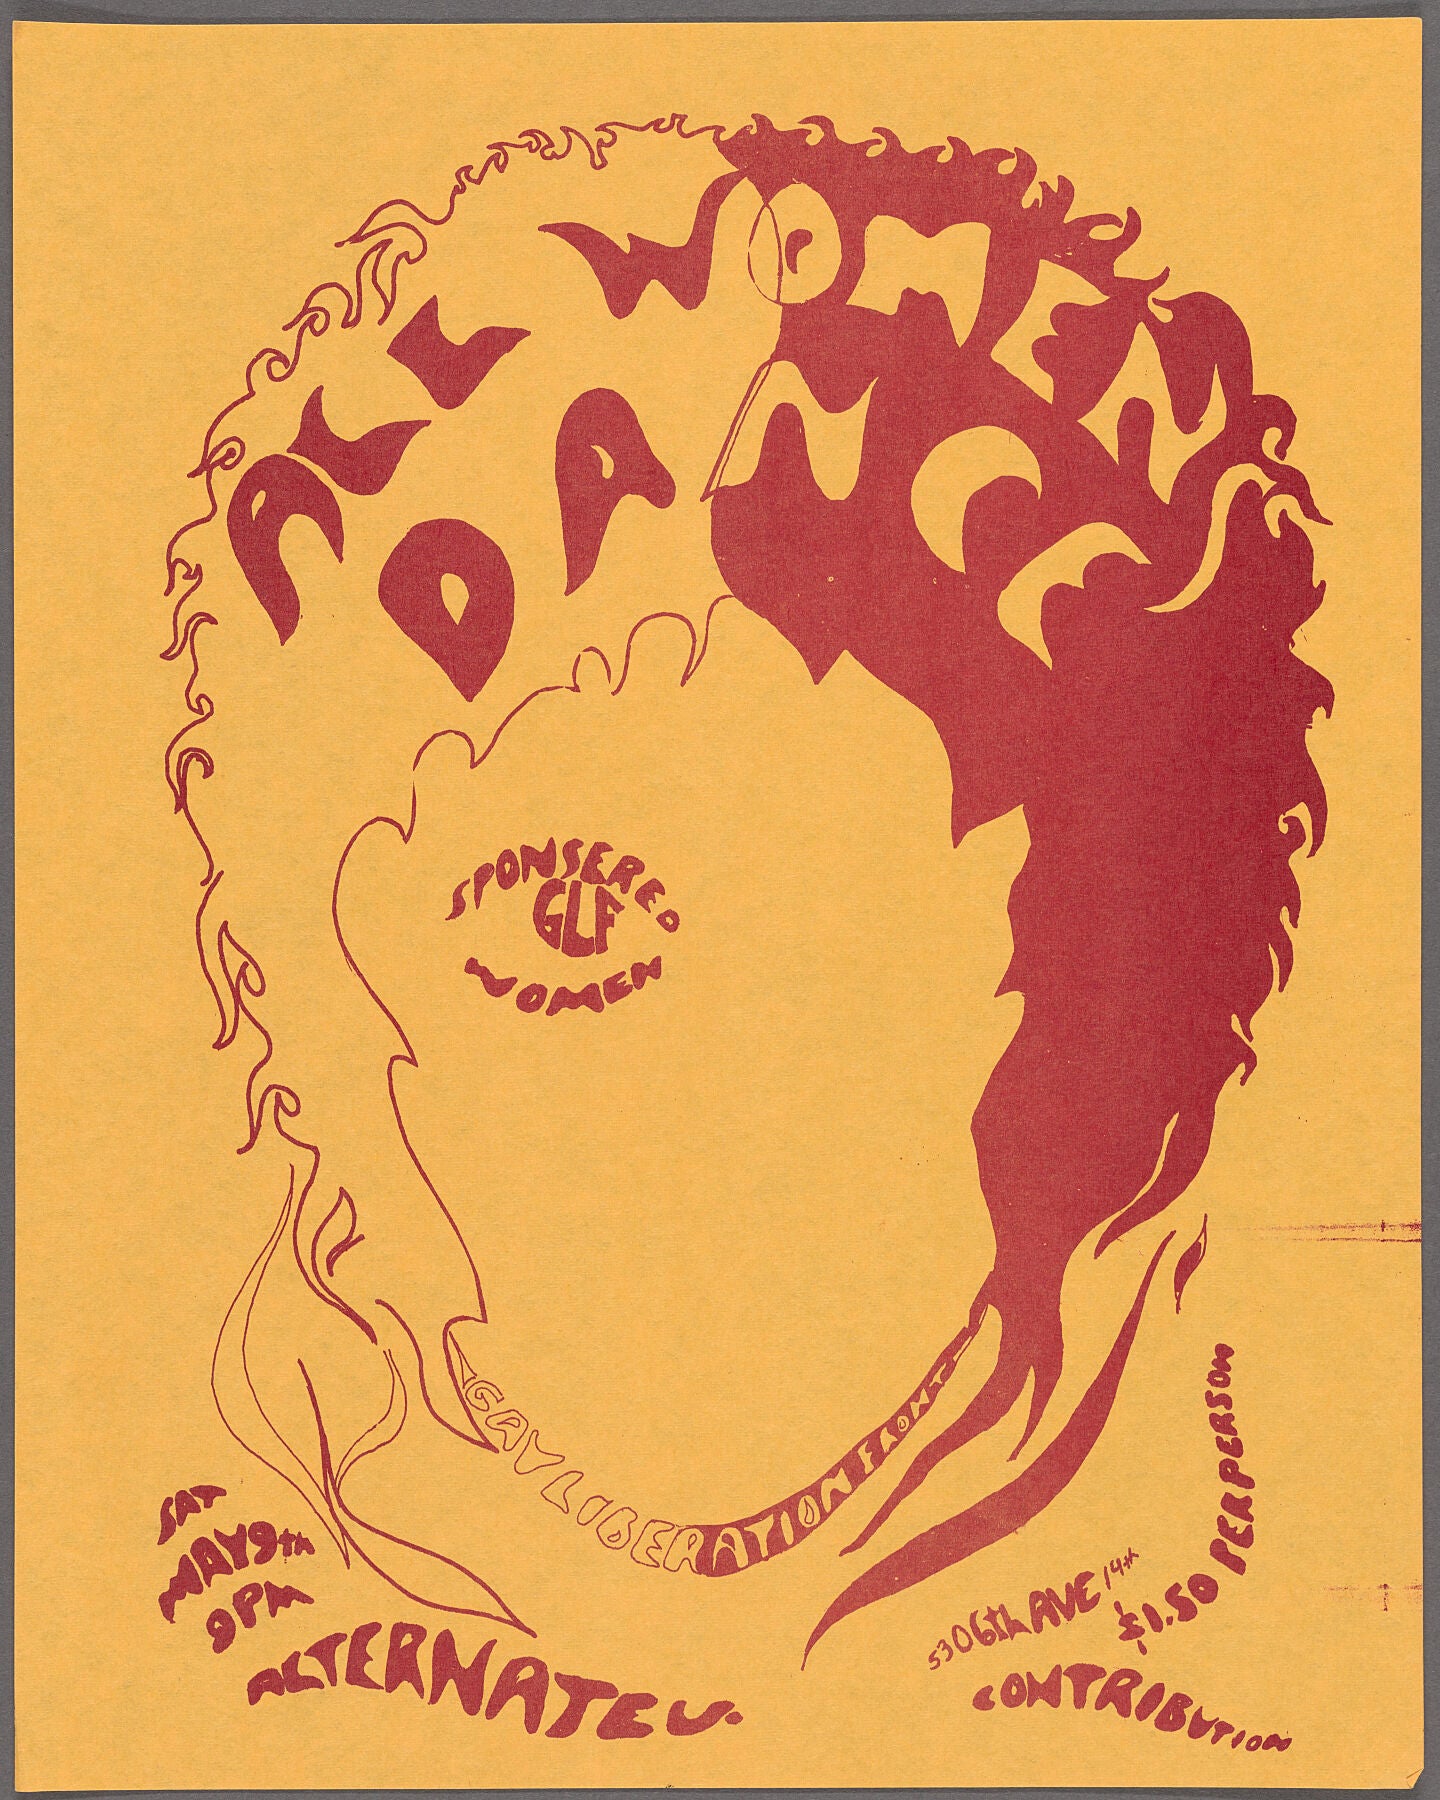 GLF - All Women Dance - 1970